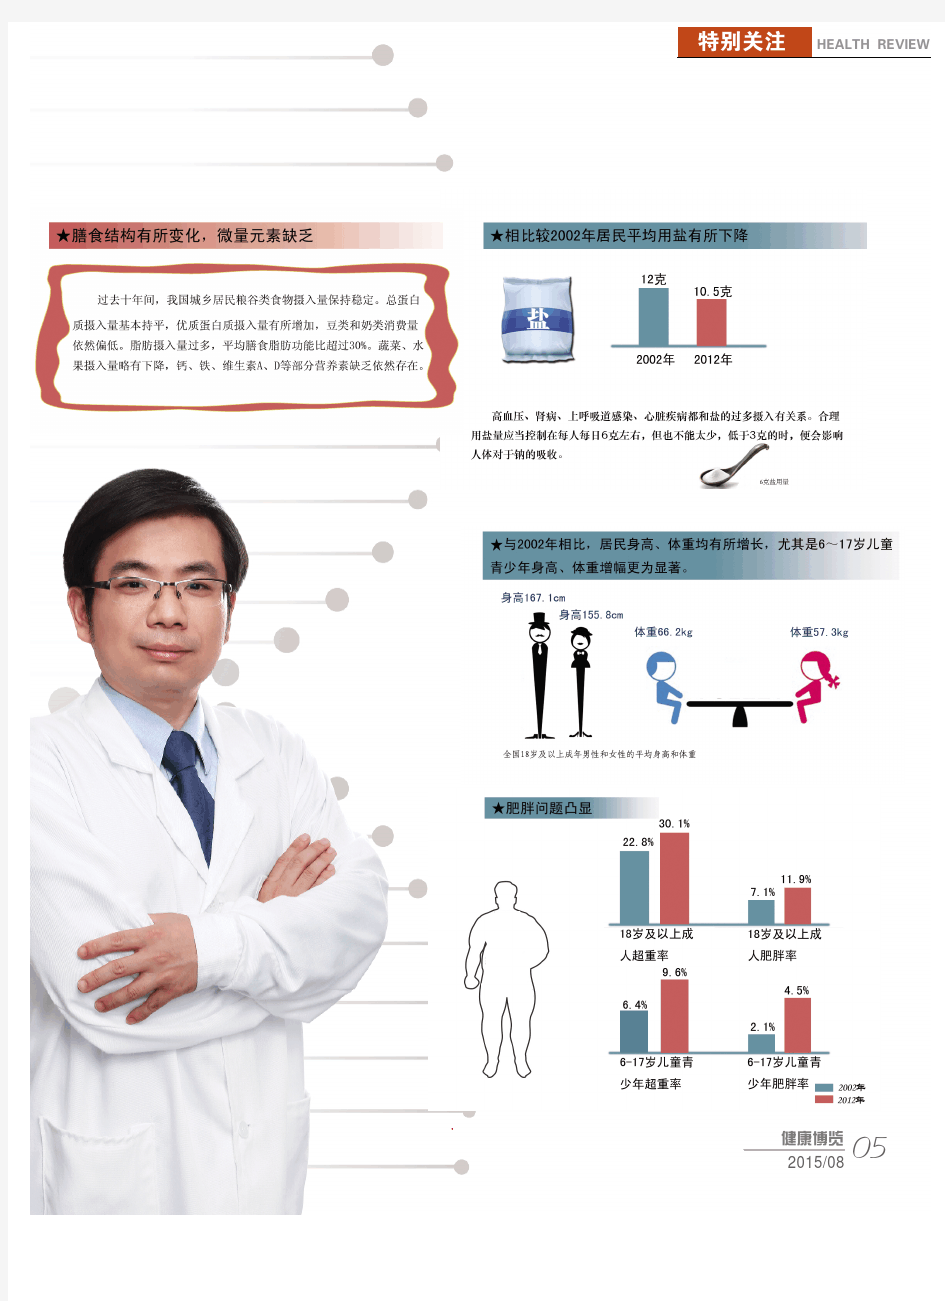 专家解读《中国居民营养与慢性病状况报告(2015)》